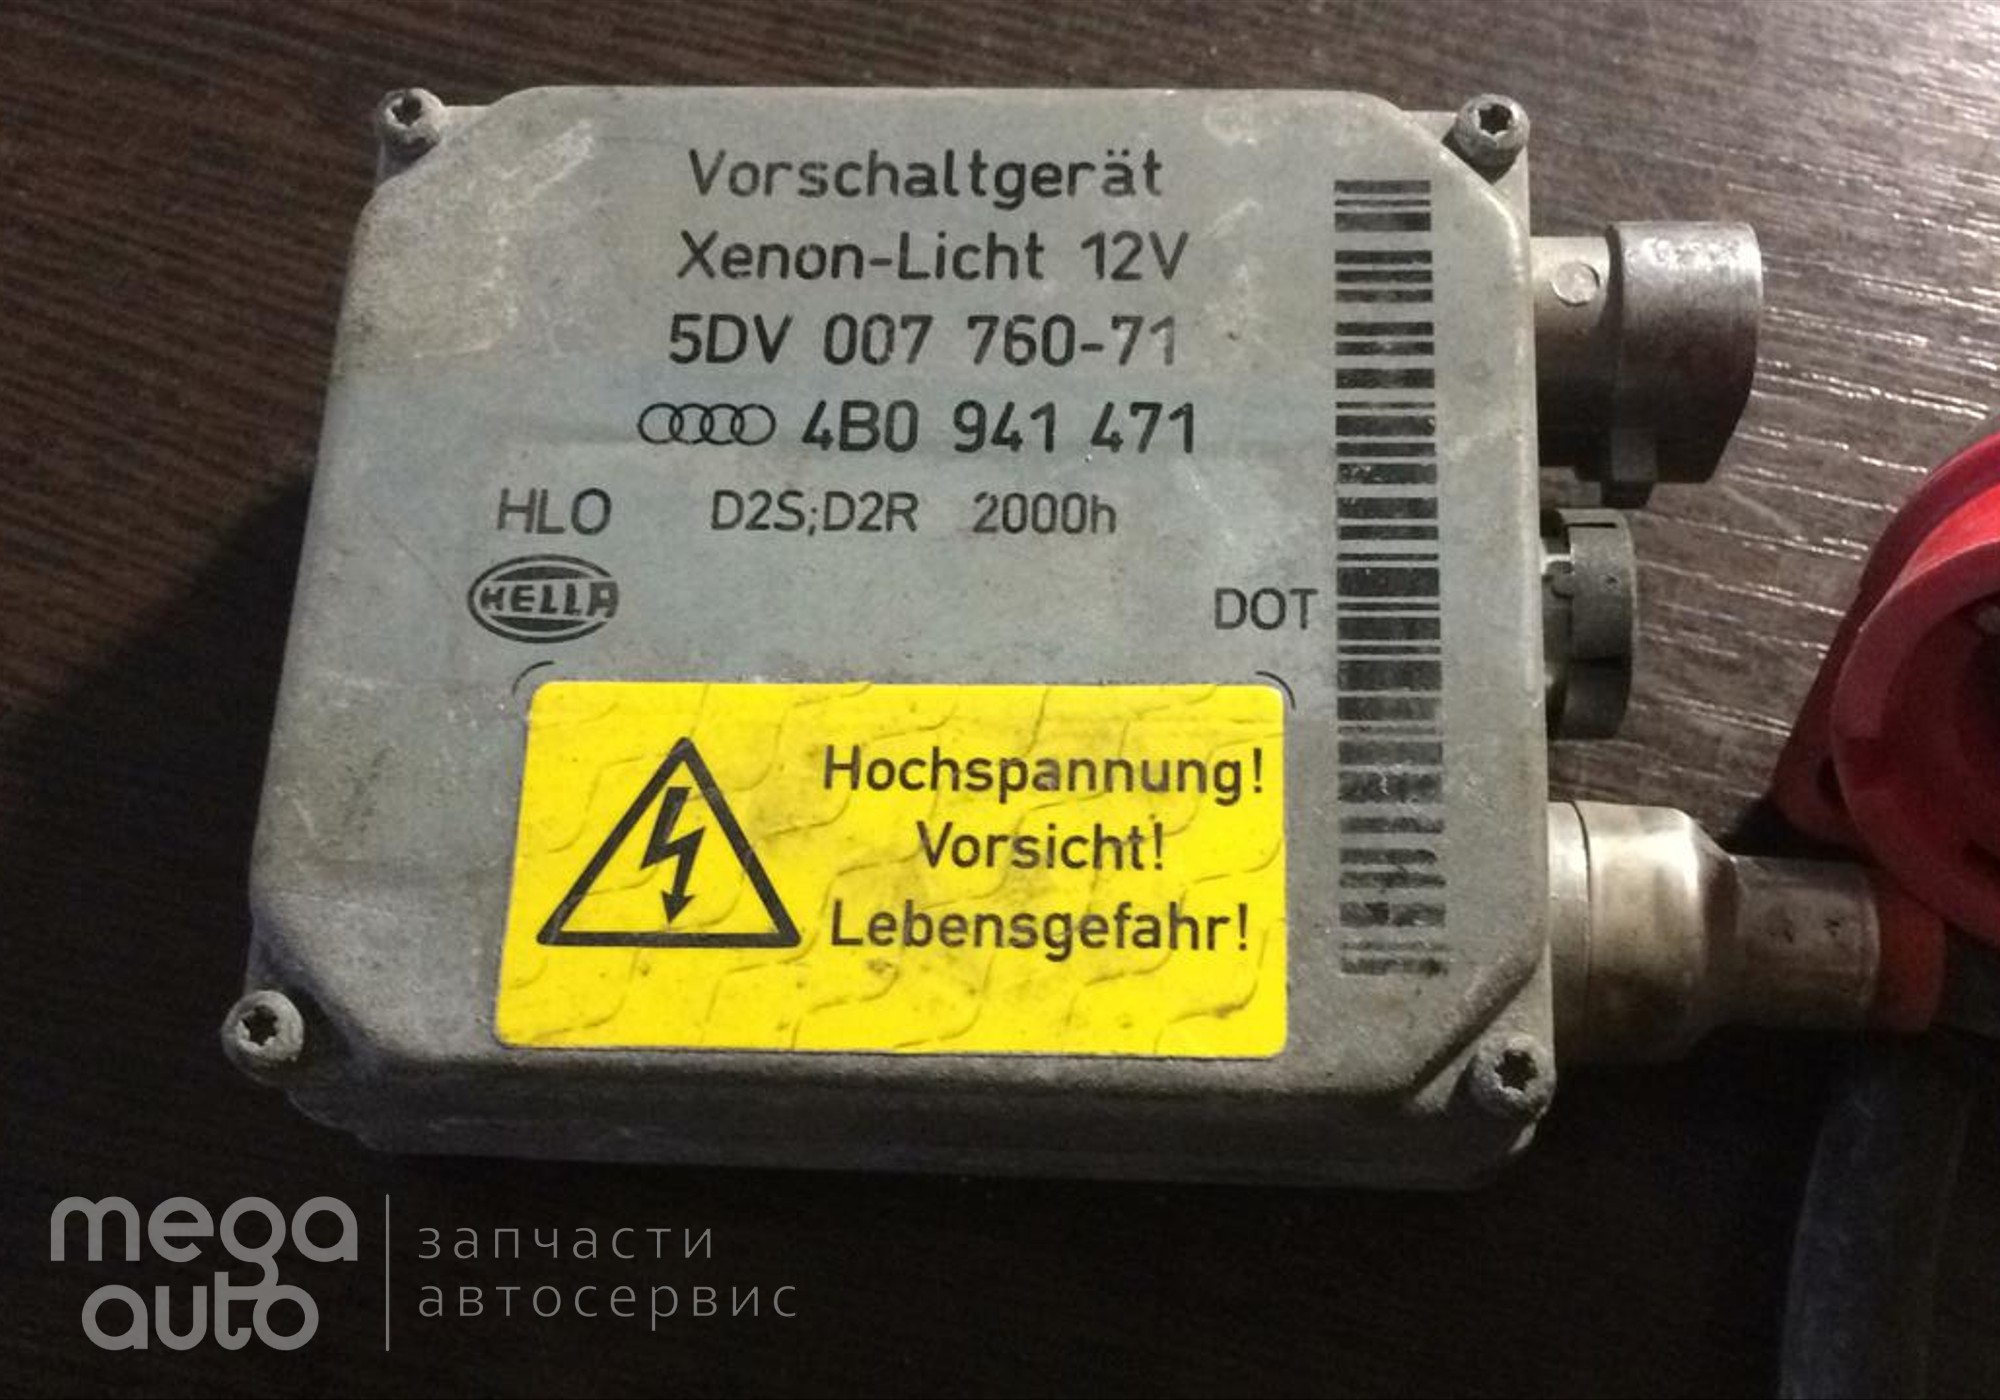 5DV00776071 Блок розжига ксеноновой лампы для Volkswagen Passat B5 (с 1996 по 2005)